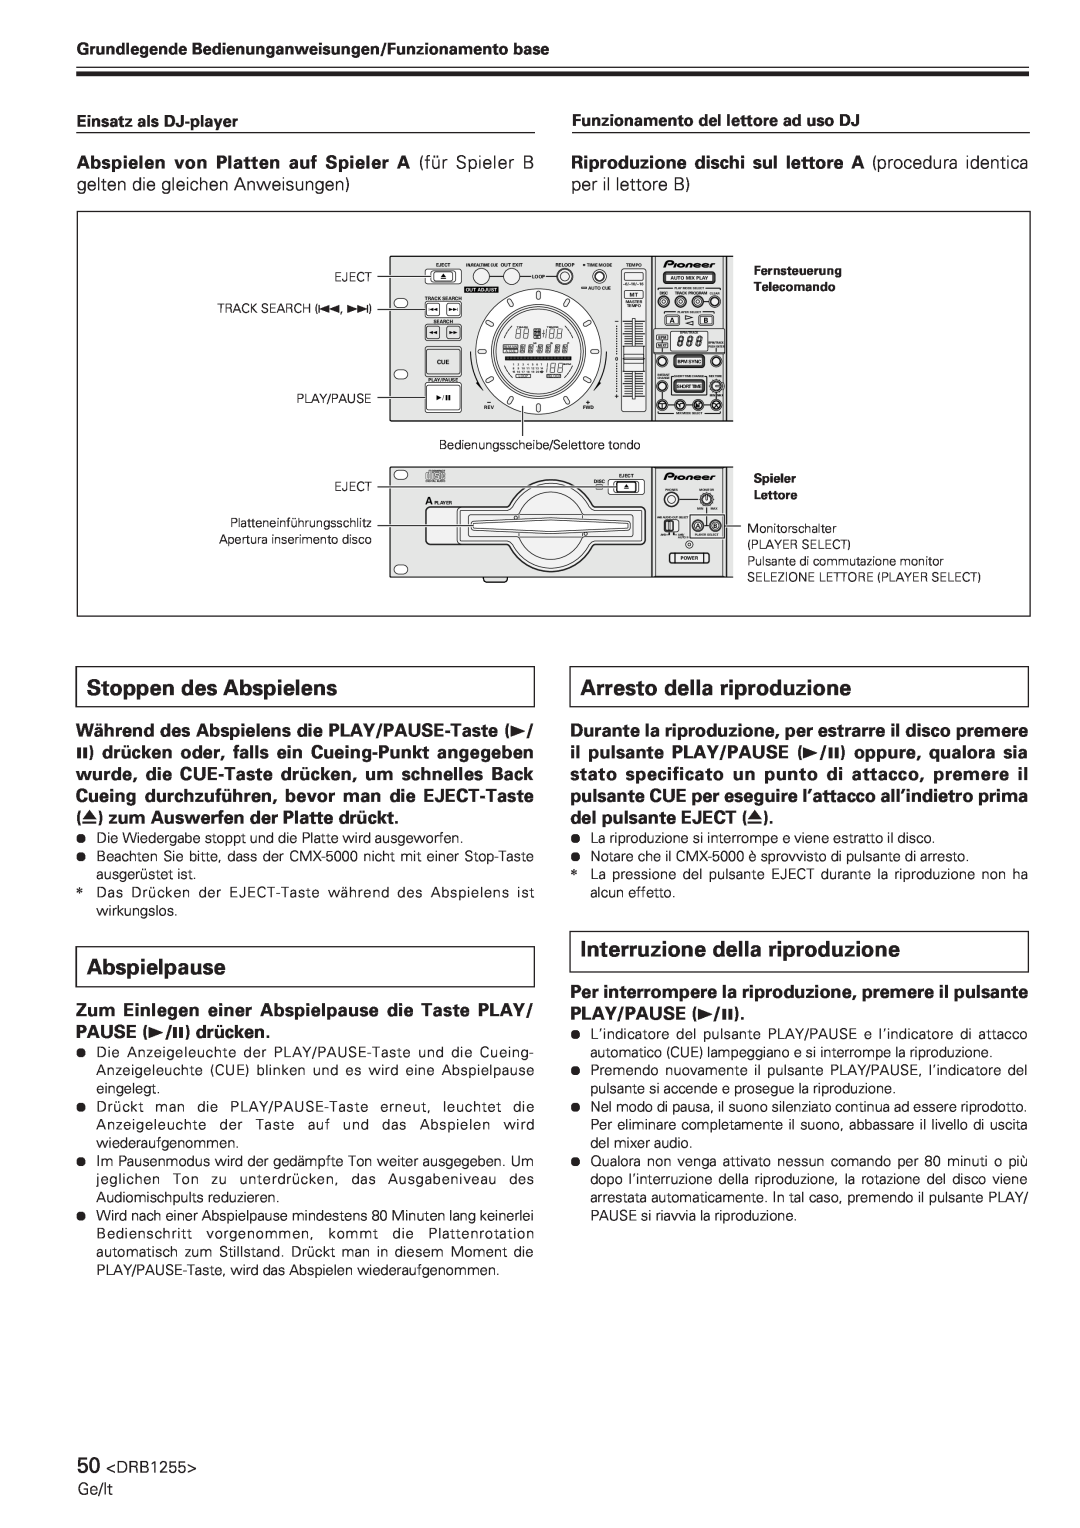 Pioneer CMX-5000 manual Stoppen des Abspielens, Arresto della riproduzione, Abspielpause, Interruzione della riproduzione 